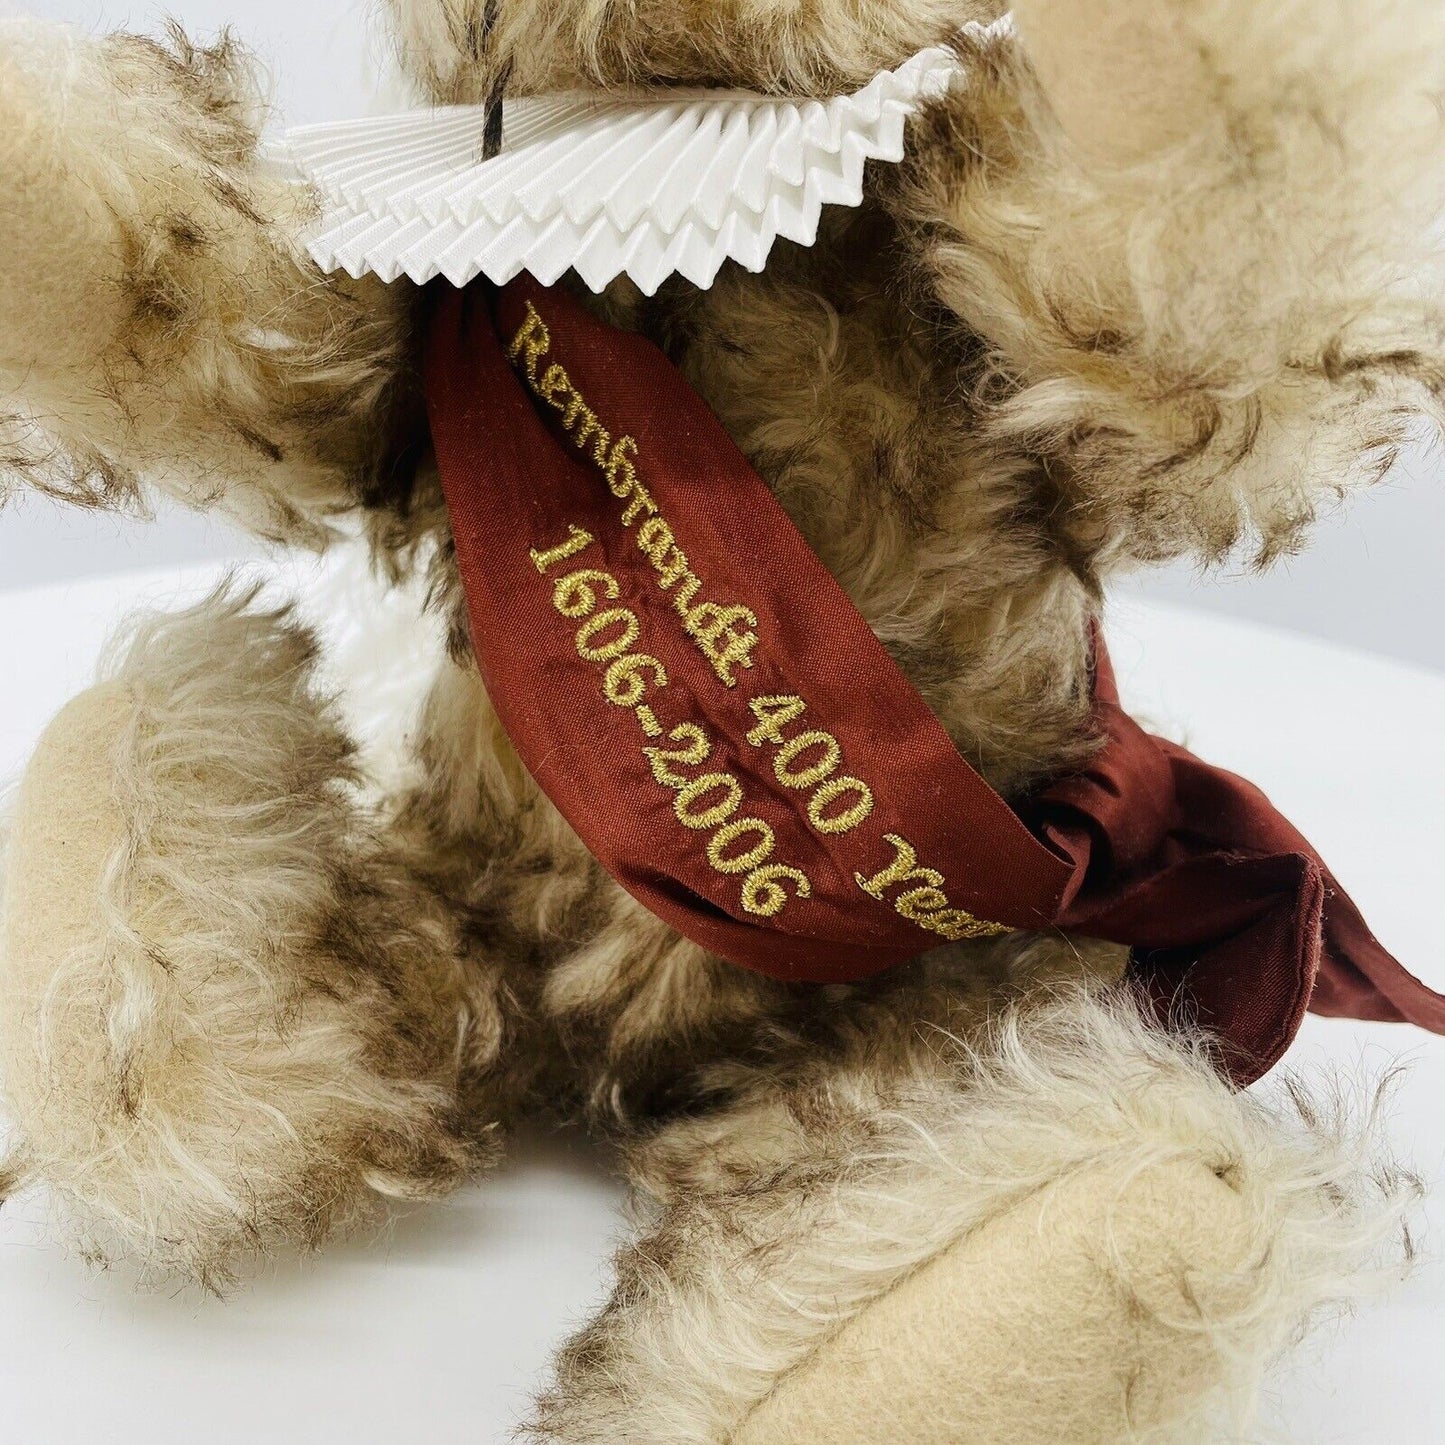 Steiff Teddybär Rembrandt 657610 limitiert 1500 aus 2006 30cm Mohair